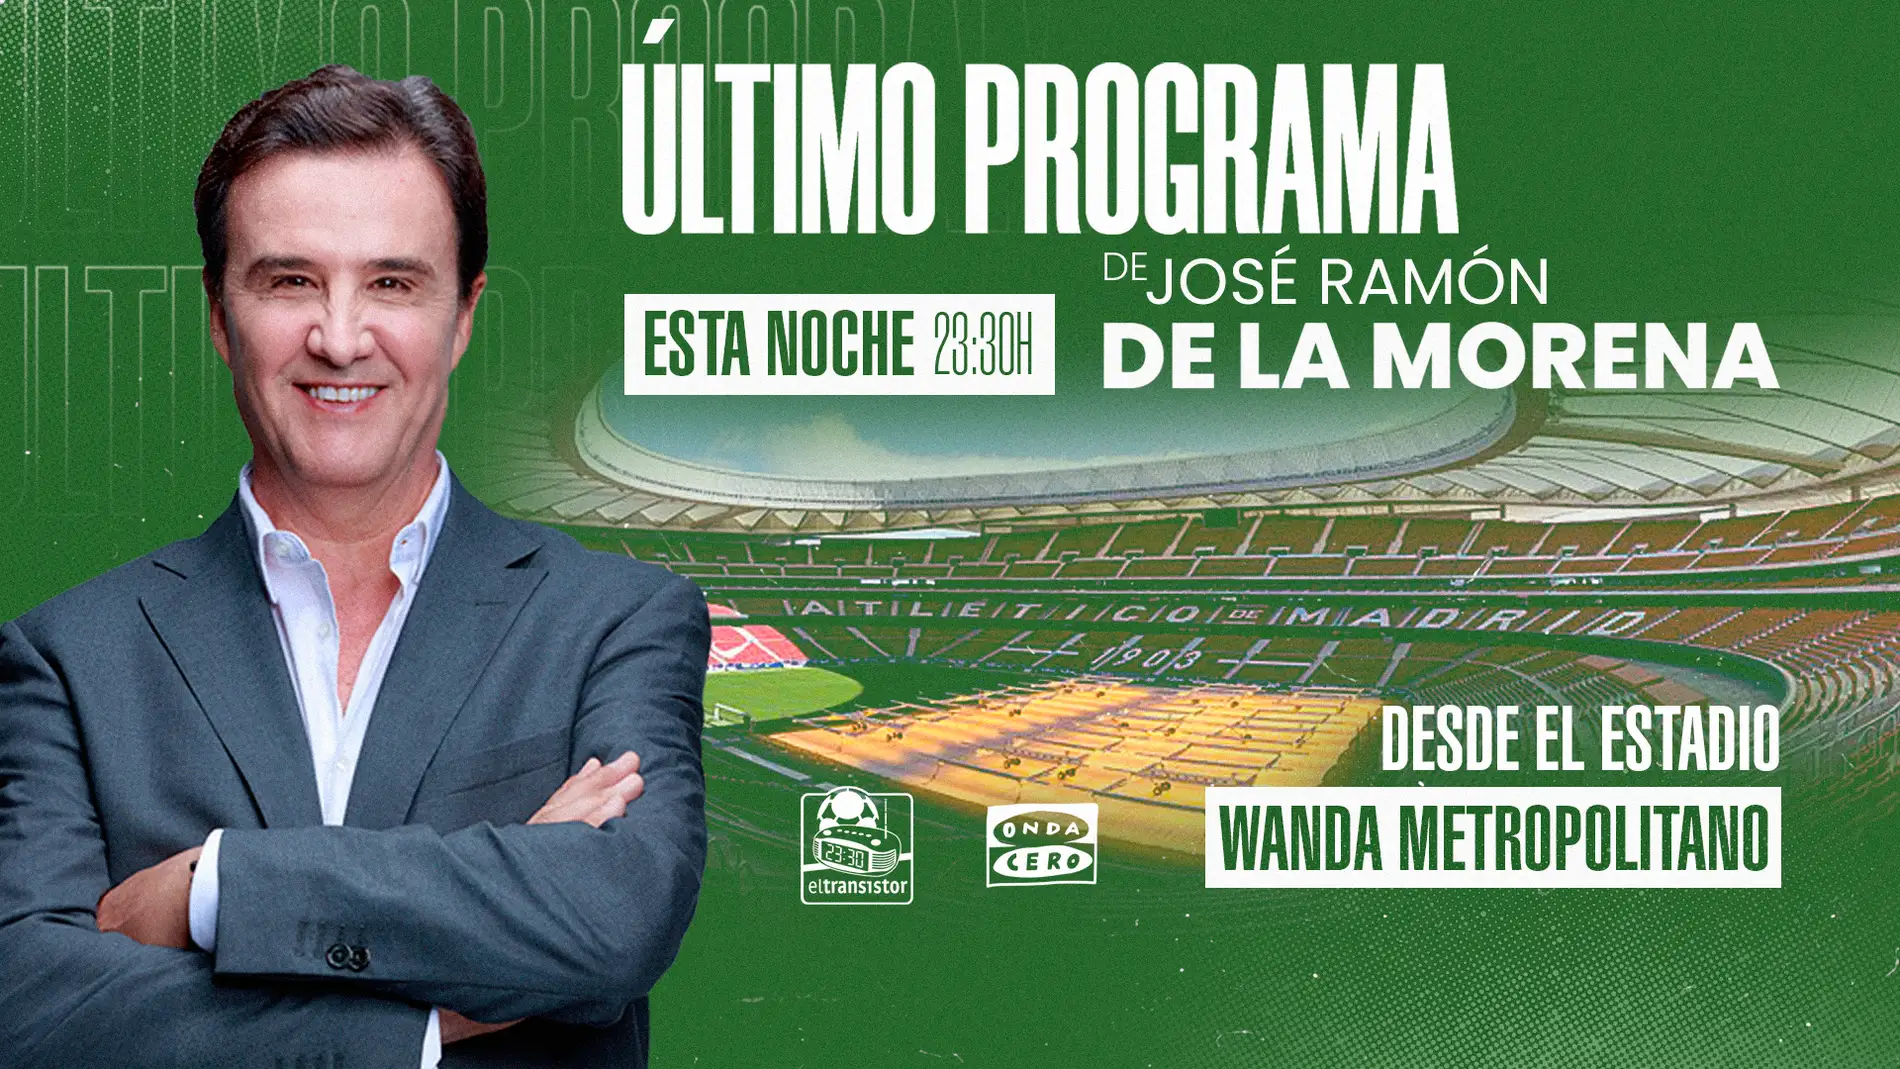 Último programa de José Ramón de la Morena desde el Wanda Metropolitano.